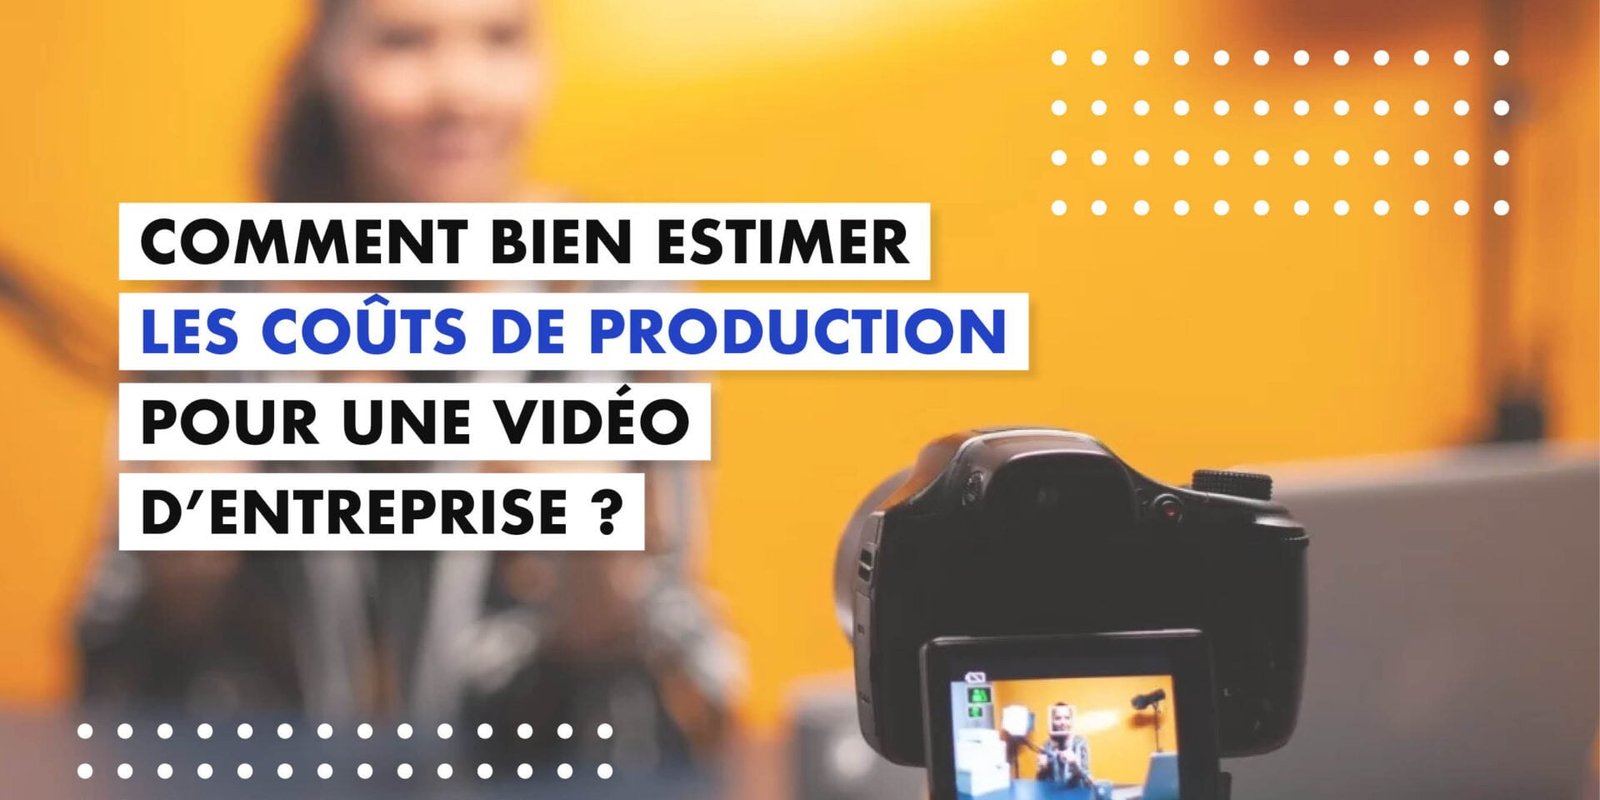 Comment bien estimer les coûts de production pour une vidéo d'entreprise?